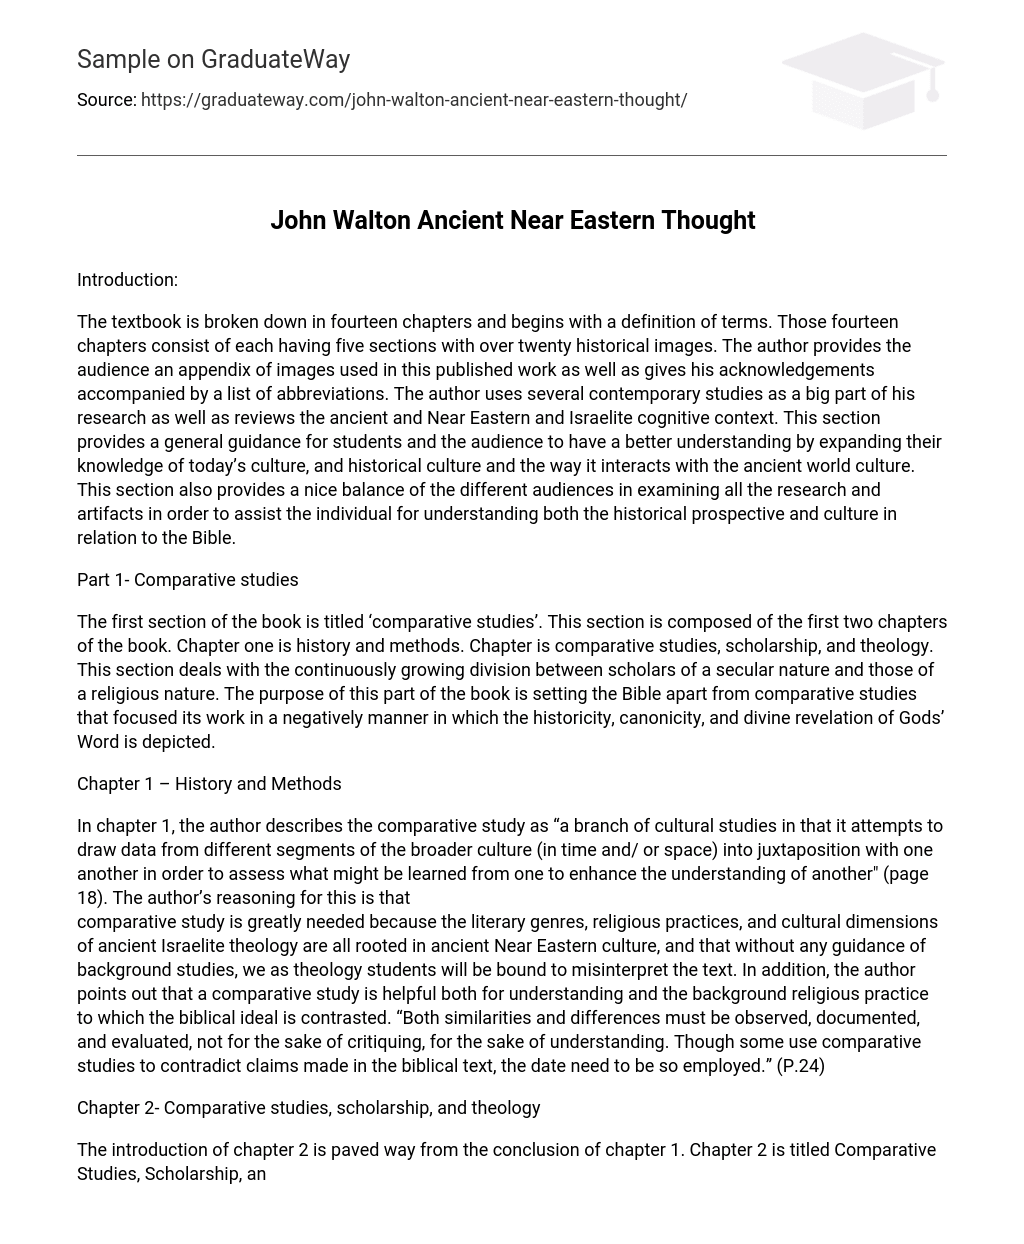 John Walton Ancient Near Eastern Thought Short Summary